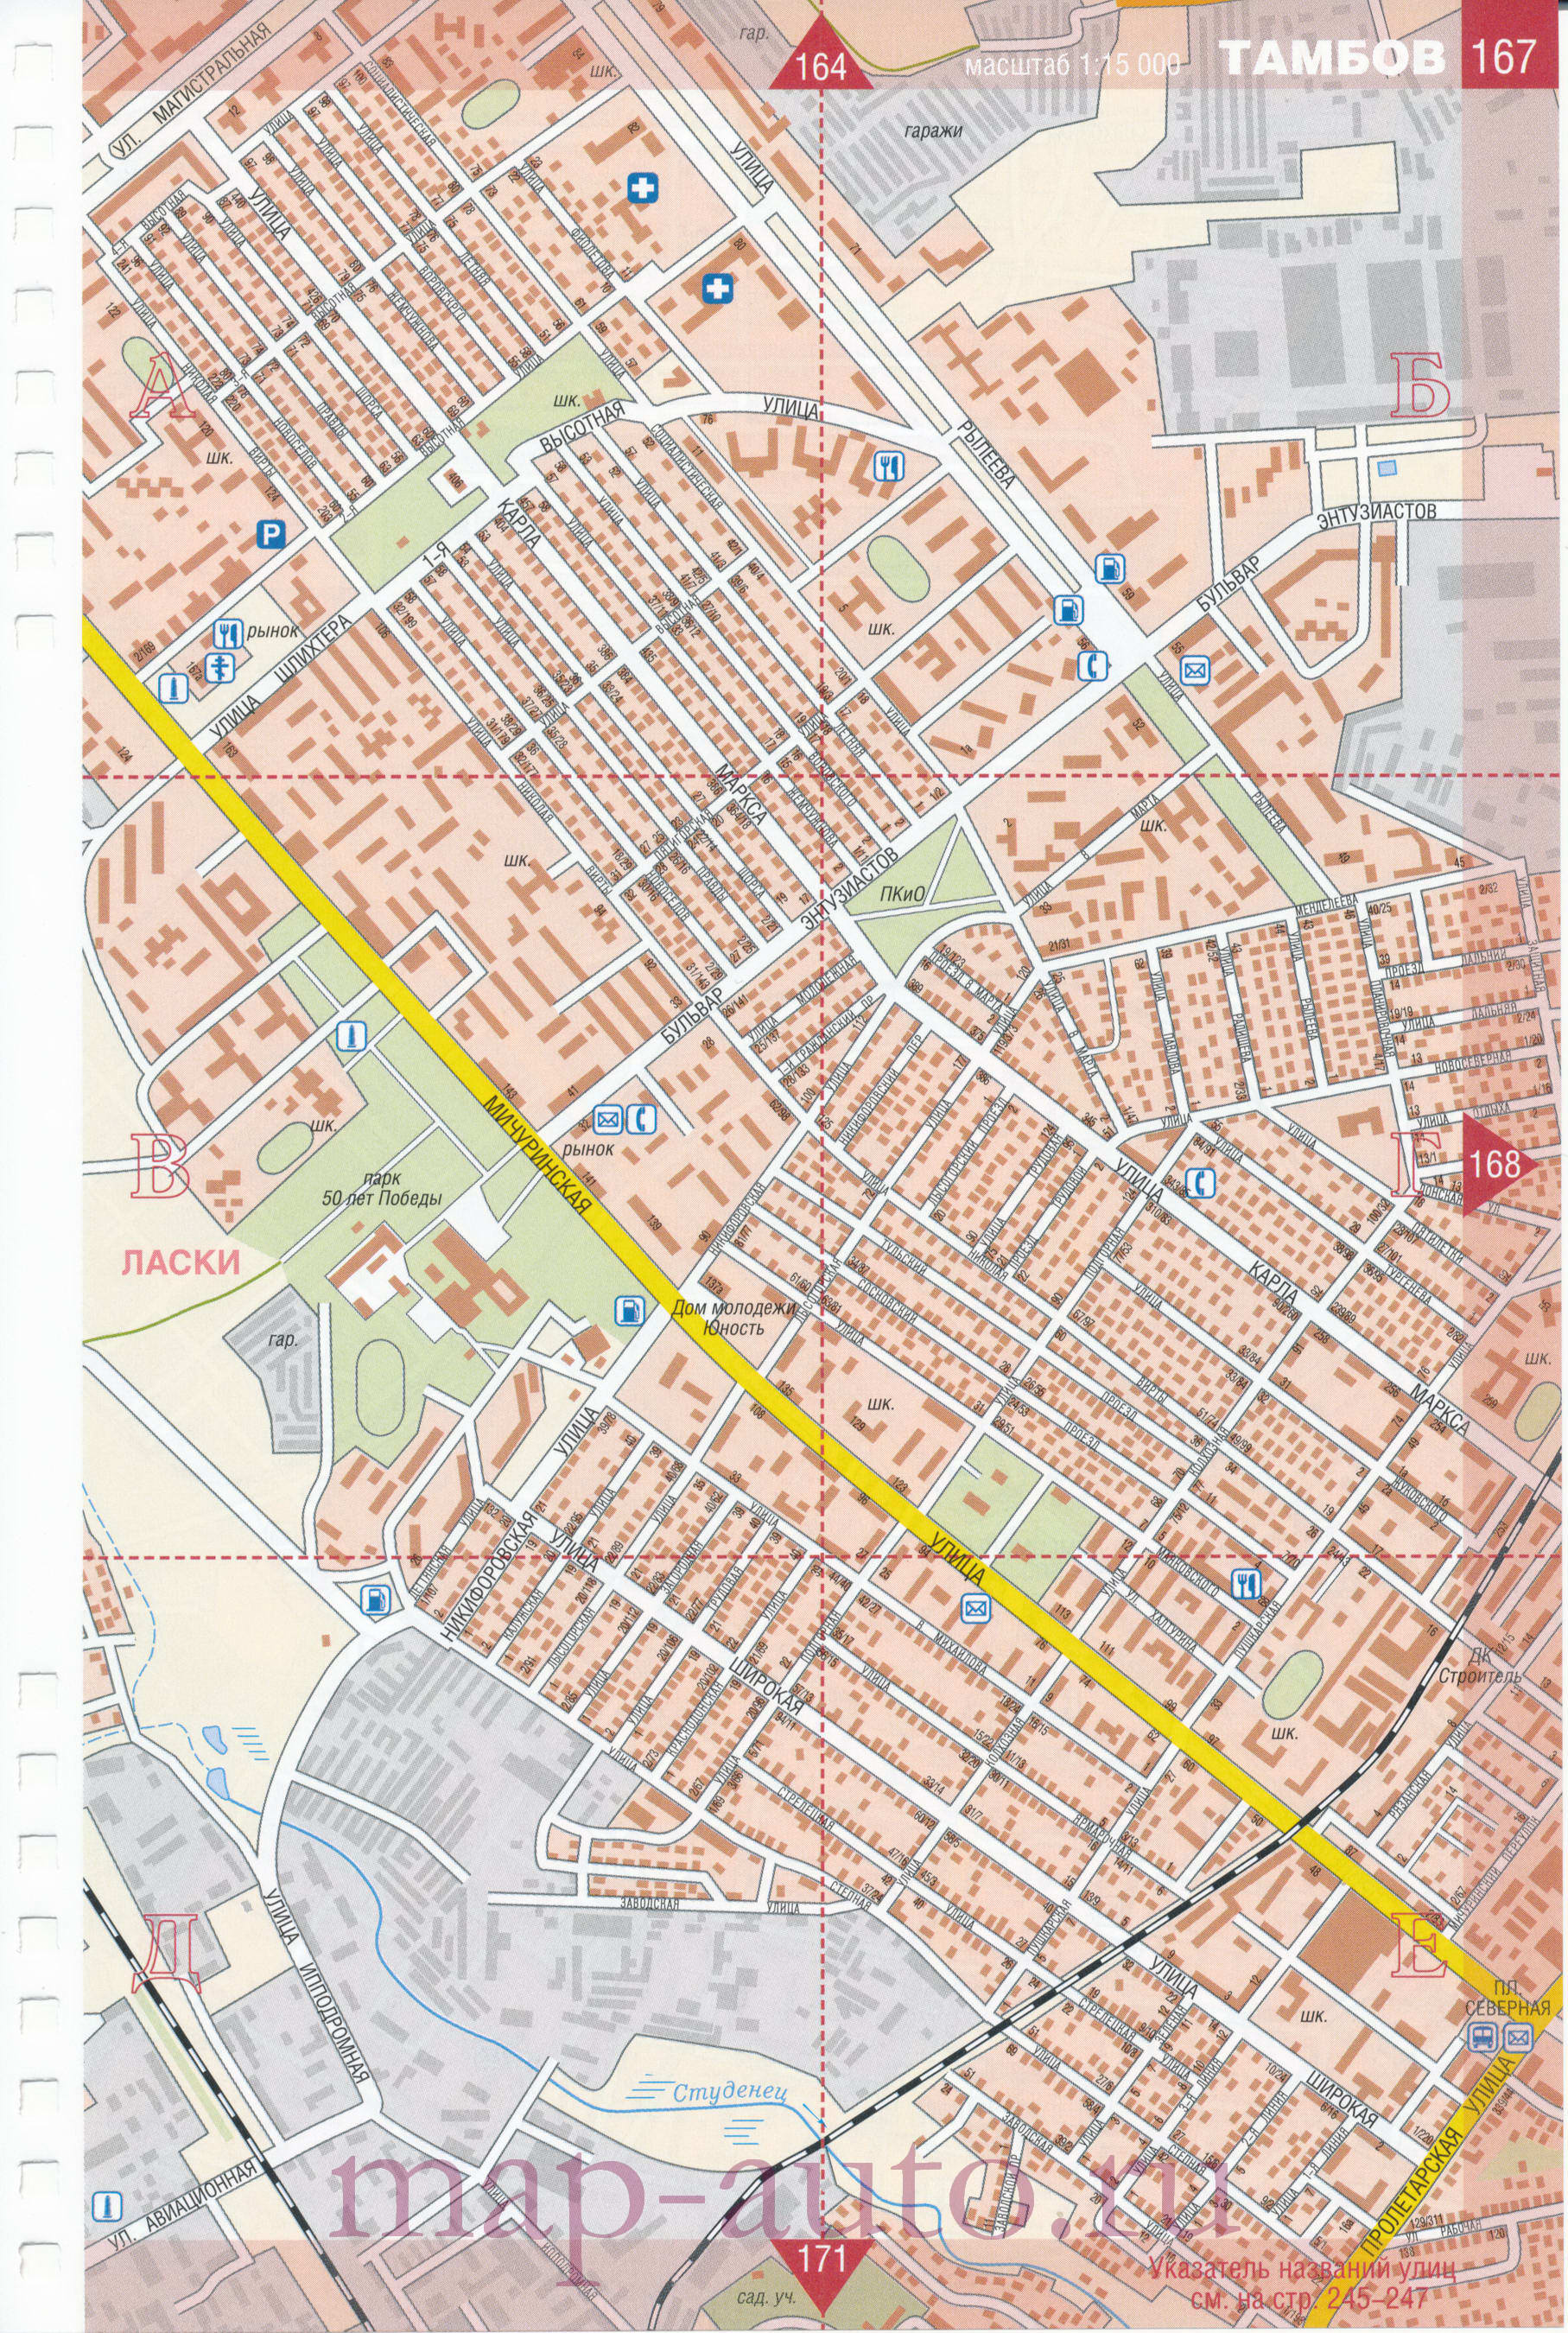 Карта Тамбова. Большая подробная карта г Тамбов с названиями улиц и номерами домов, B0 - 